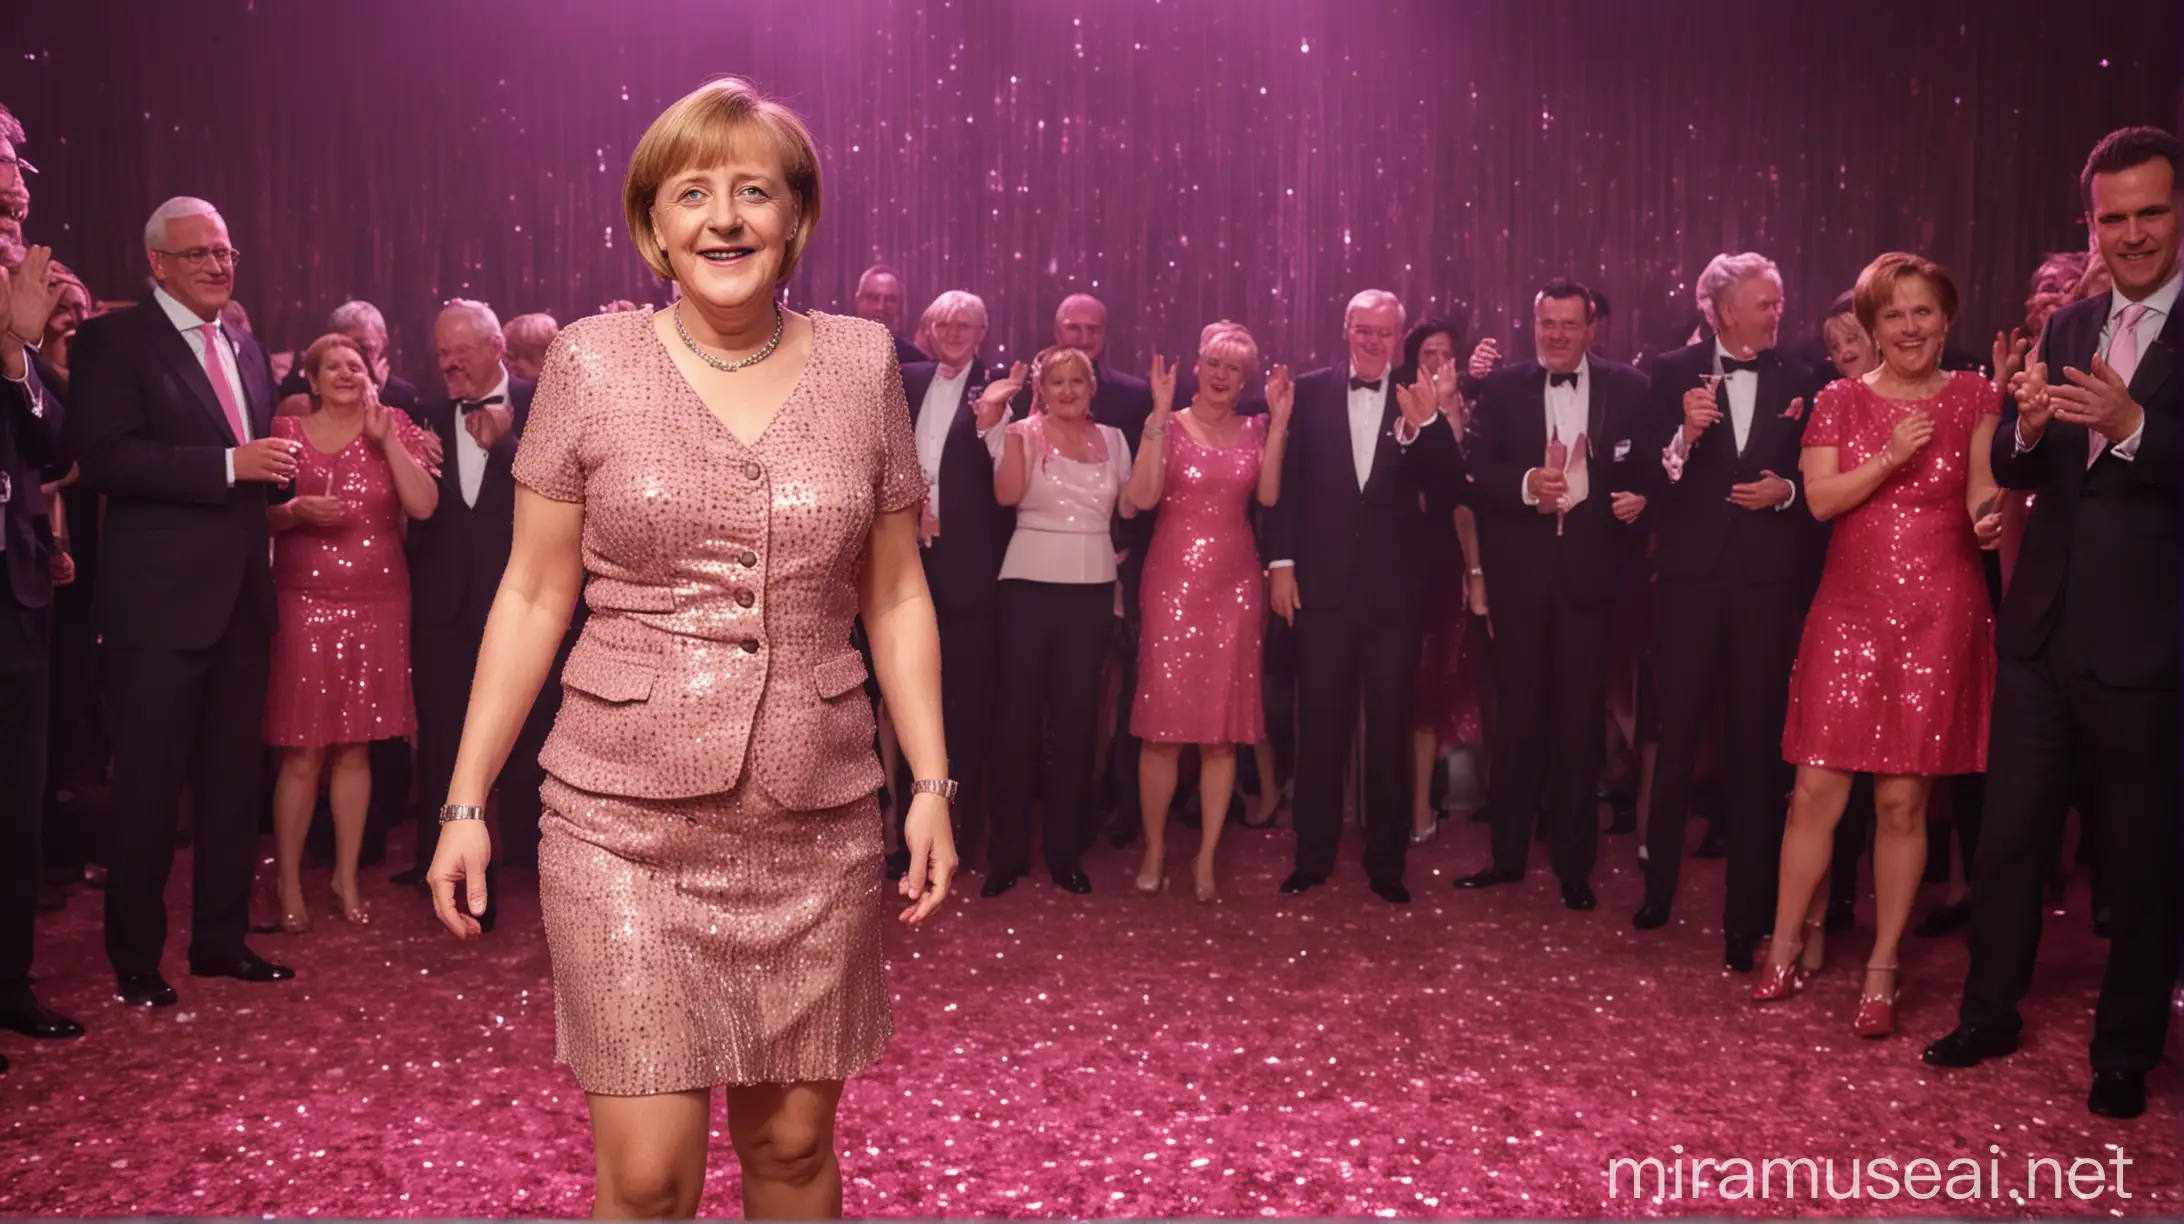 Angela Merkel in Pink Sequined Dress on Dance Floor